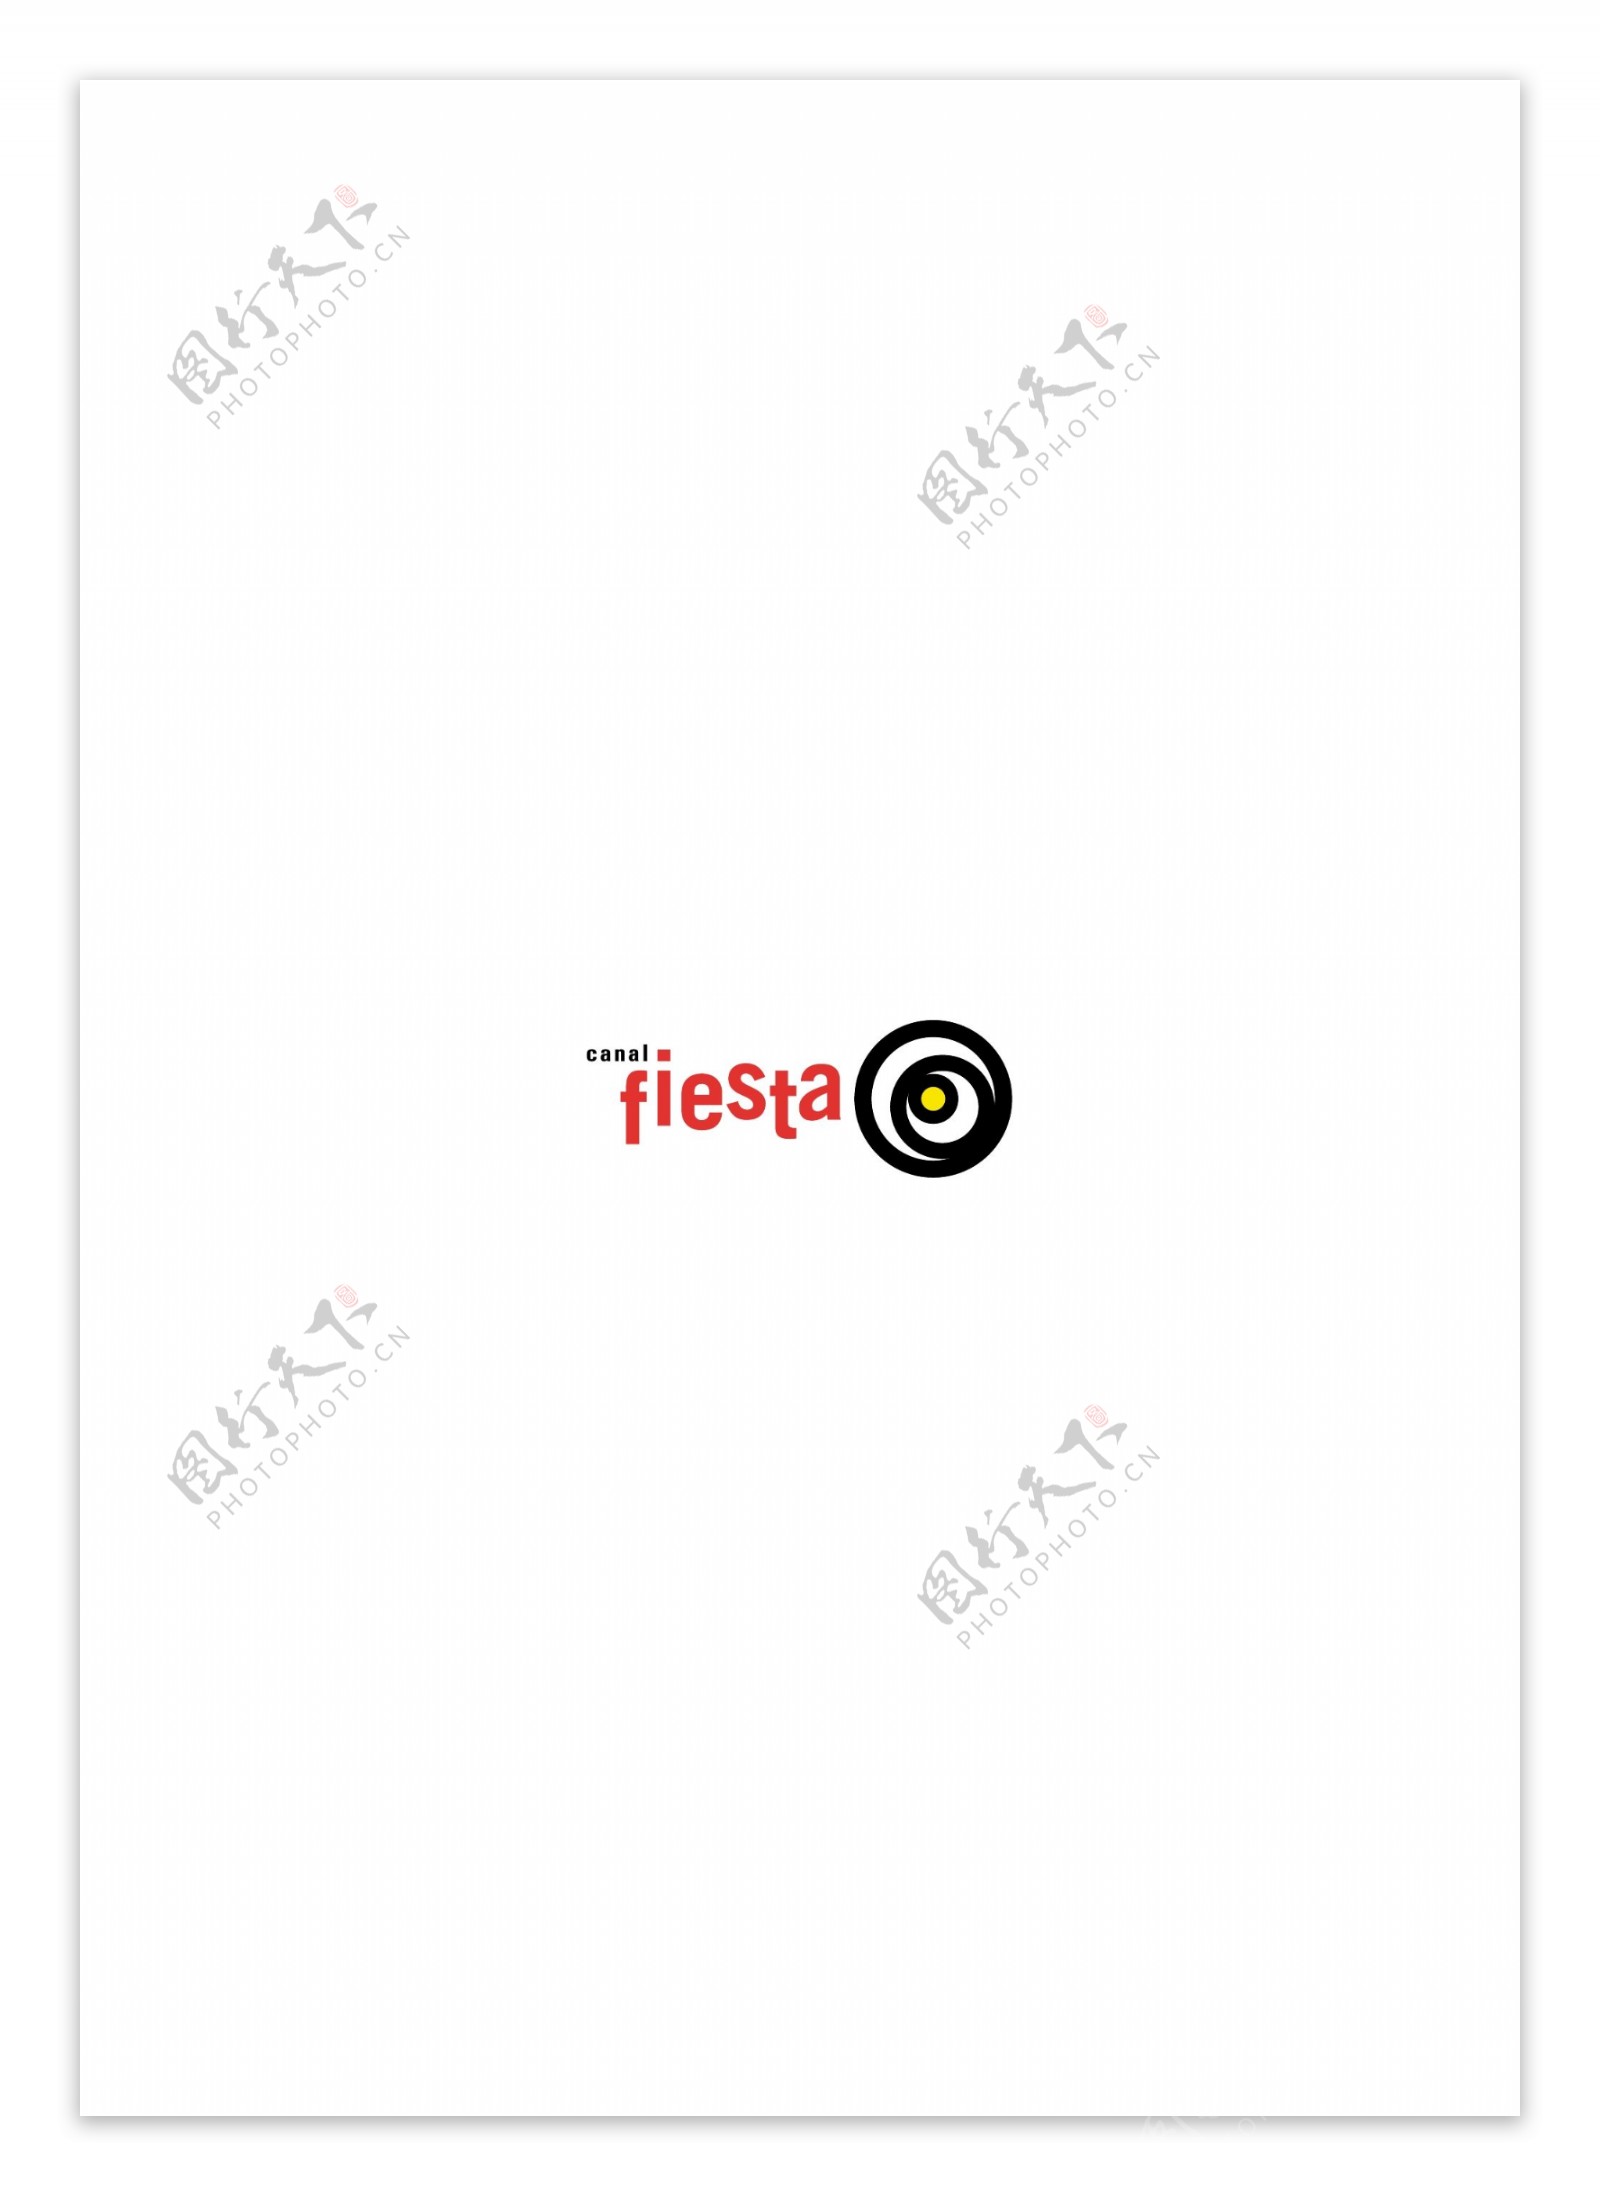 FiestaCanallogo设计欣赏FiestaCanal传媒机构LOGO下载标志设计欣赏